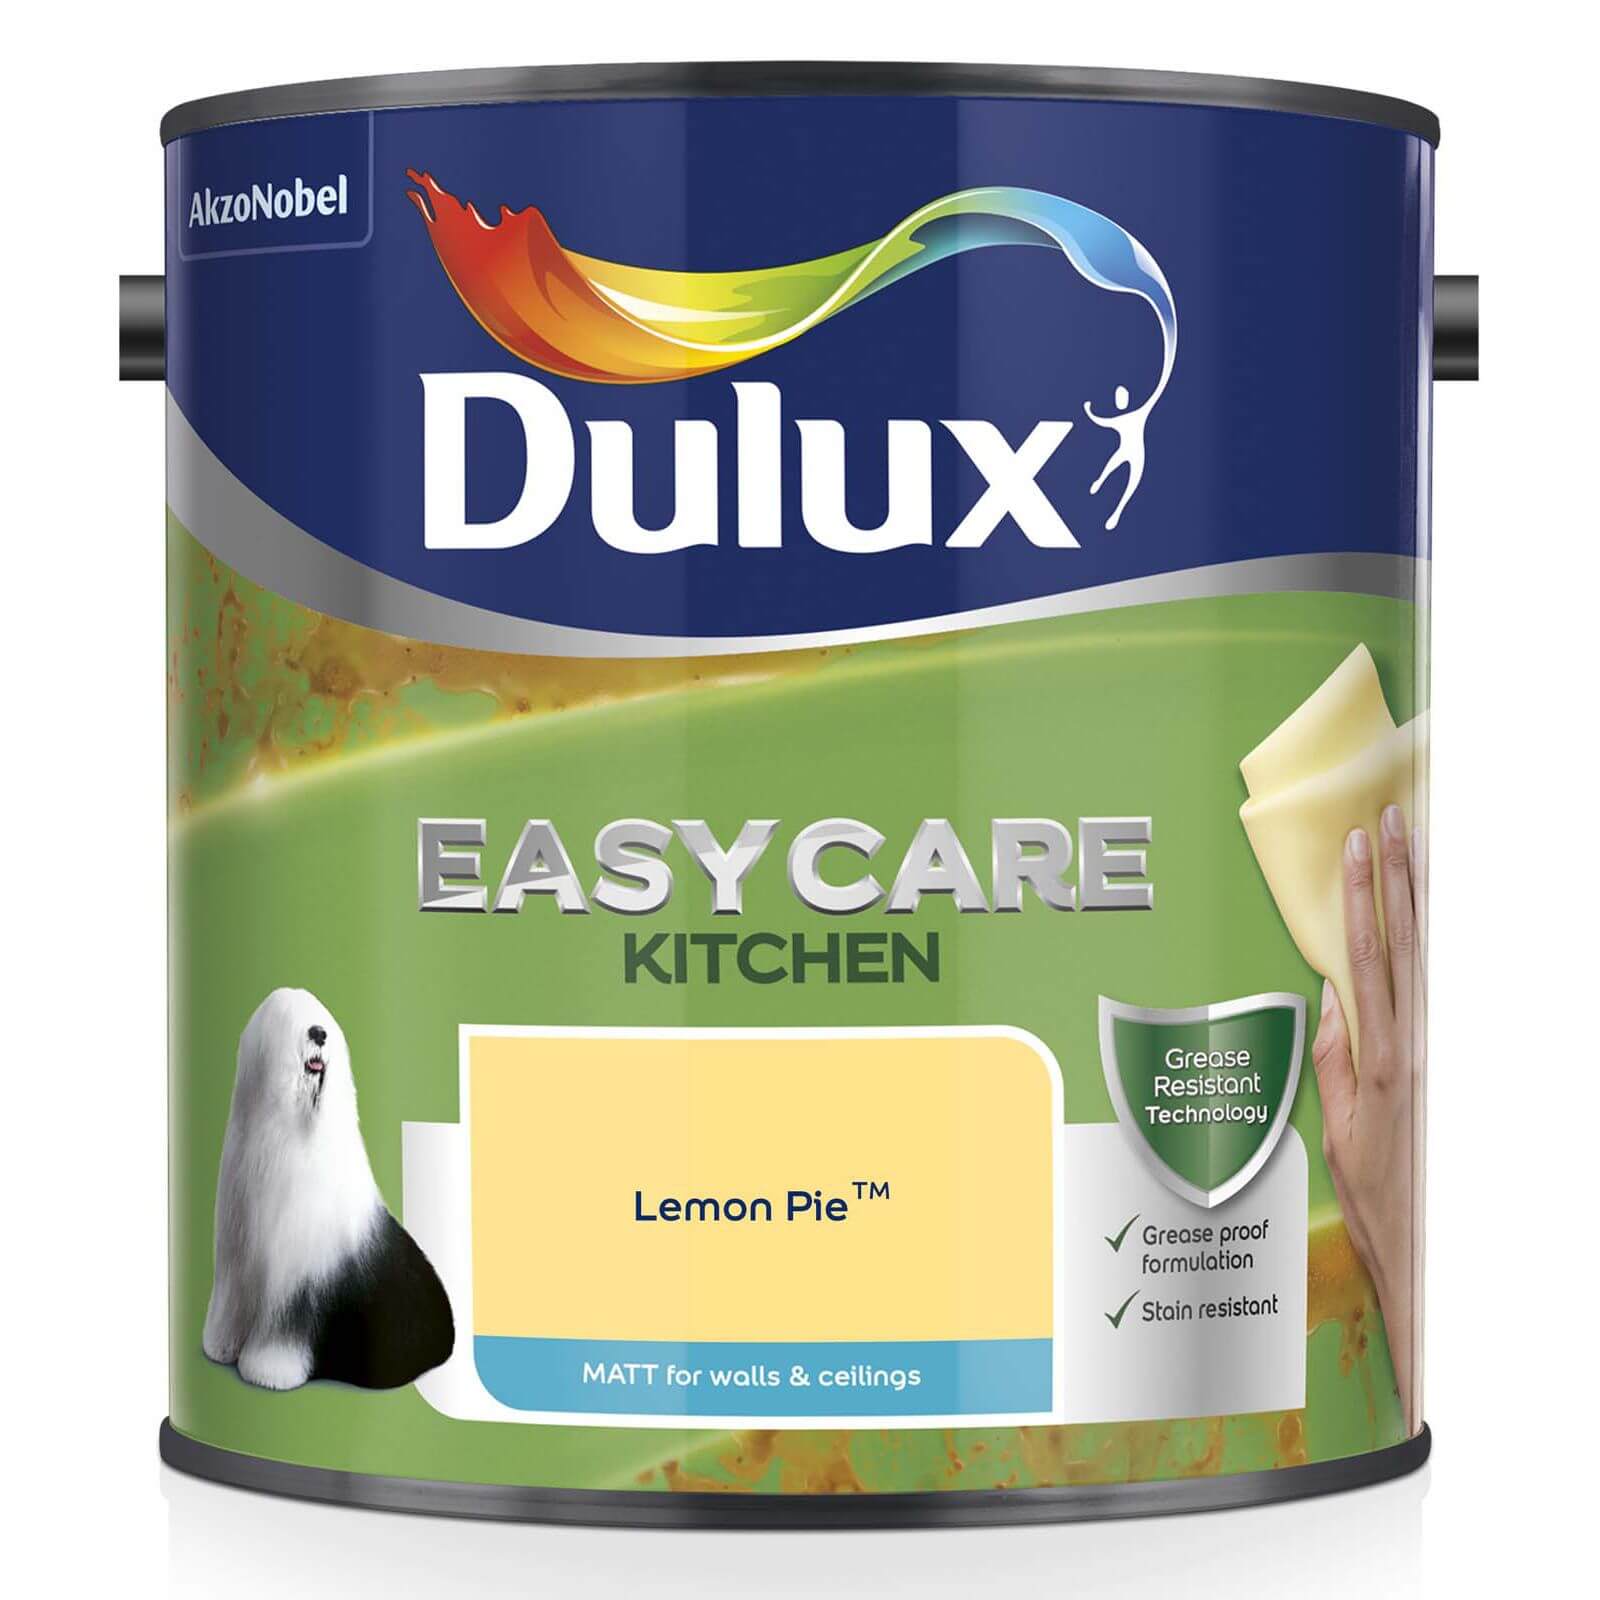 Dulux Easycare Kitchen Lemon Pie Matt Paint - 2.5L